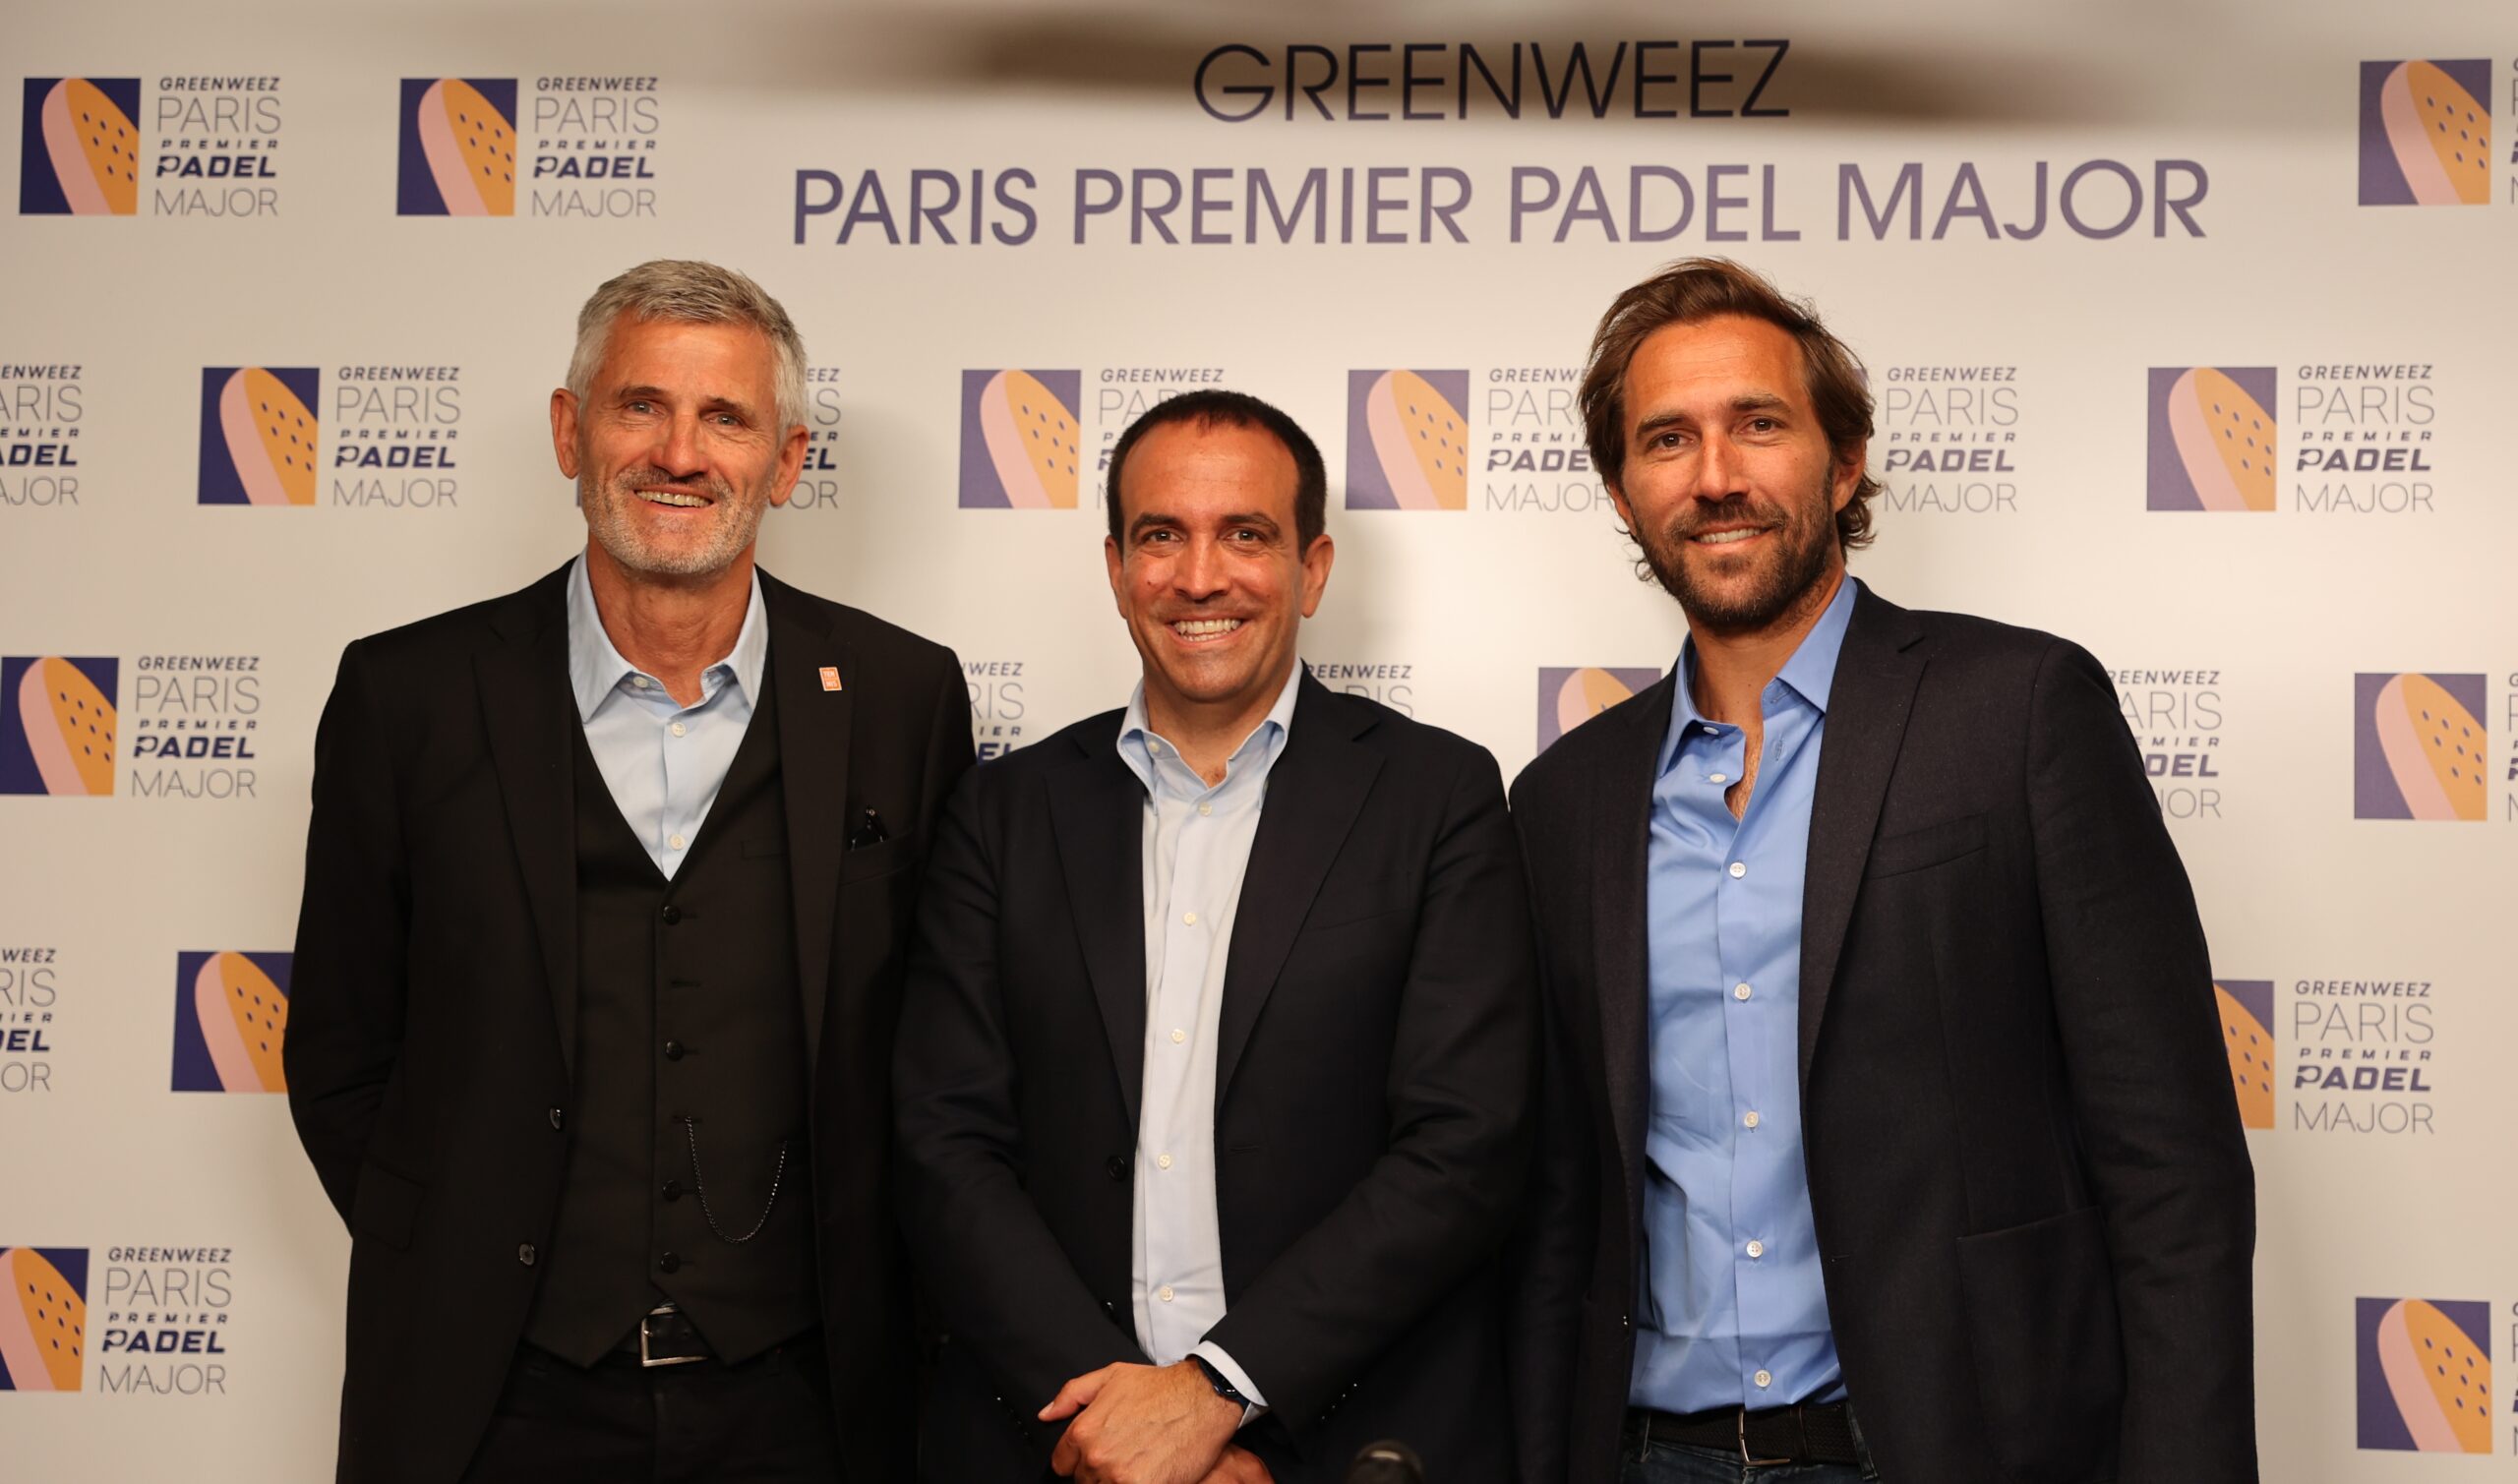 Het Roland-Garros-stadion klaar om de . te verwelkomen Greenweez Paris Premier Padel Major